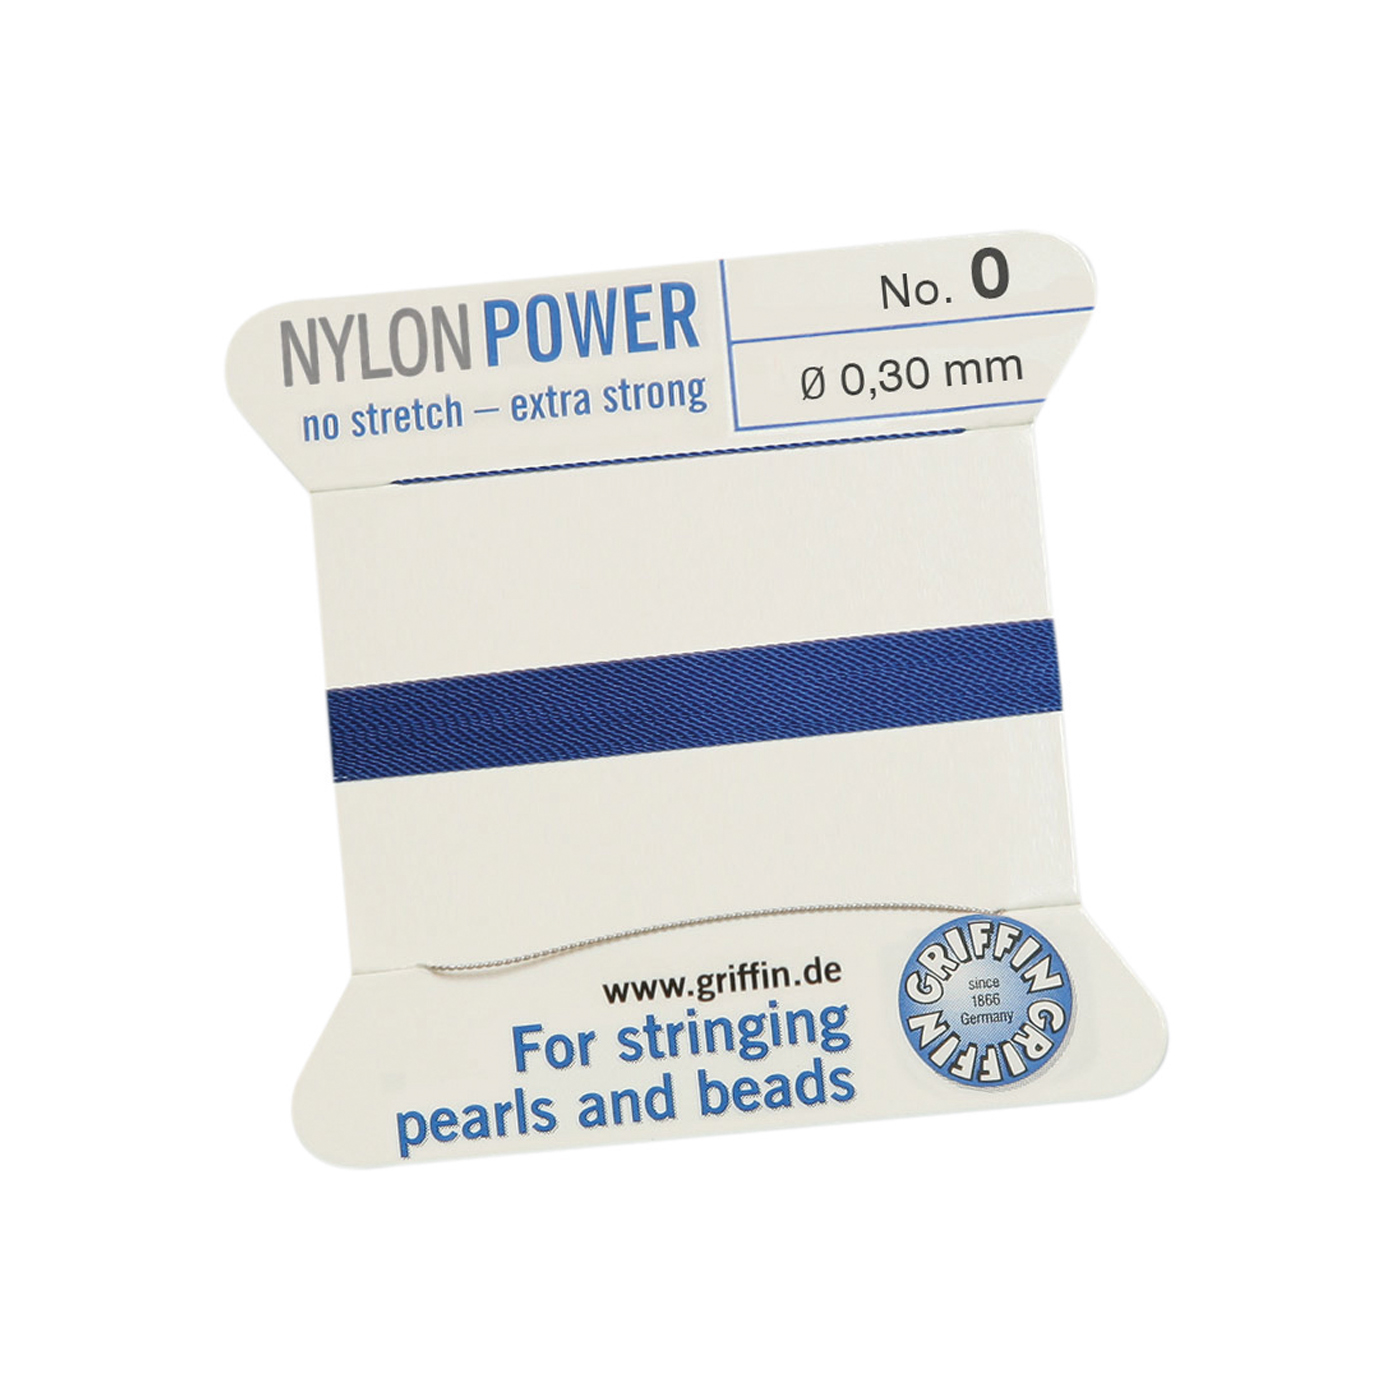 Bead Cord NylonPower, Dark Blue, No. 0 - 2 m